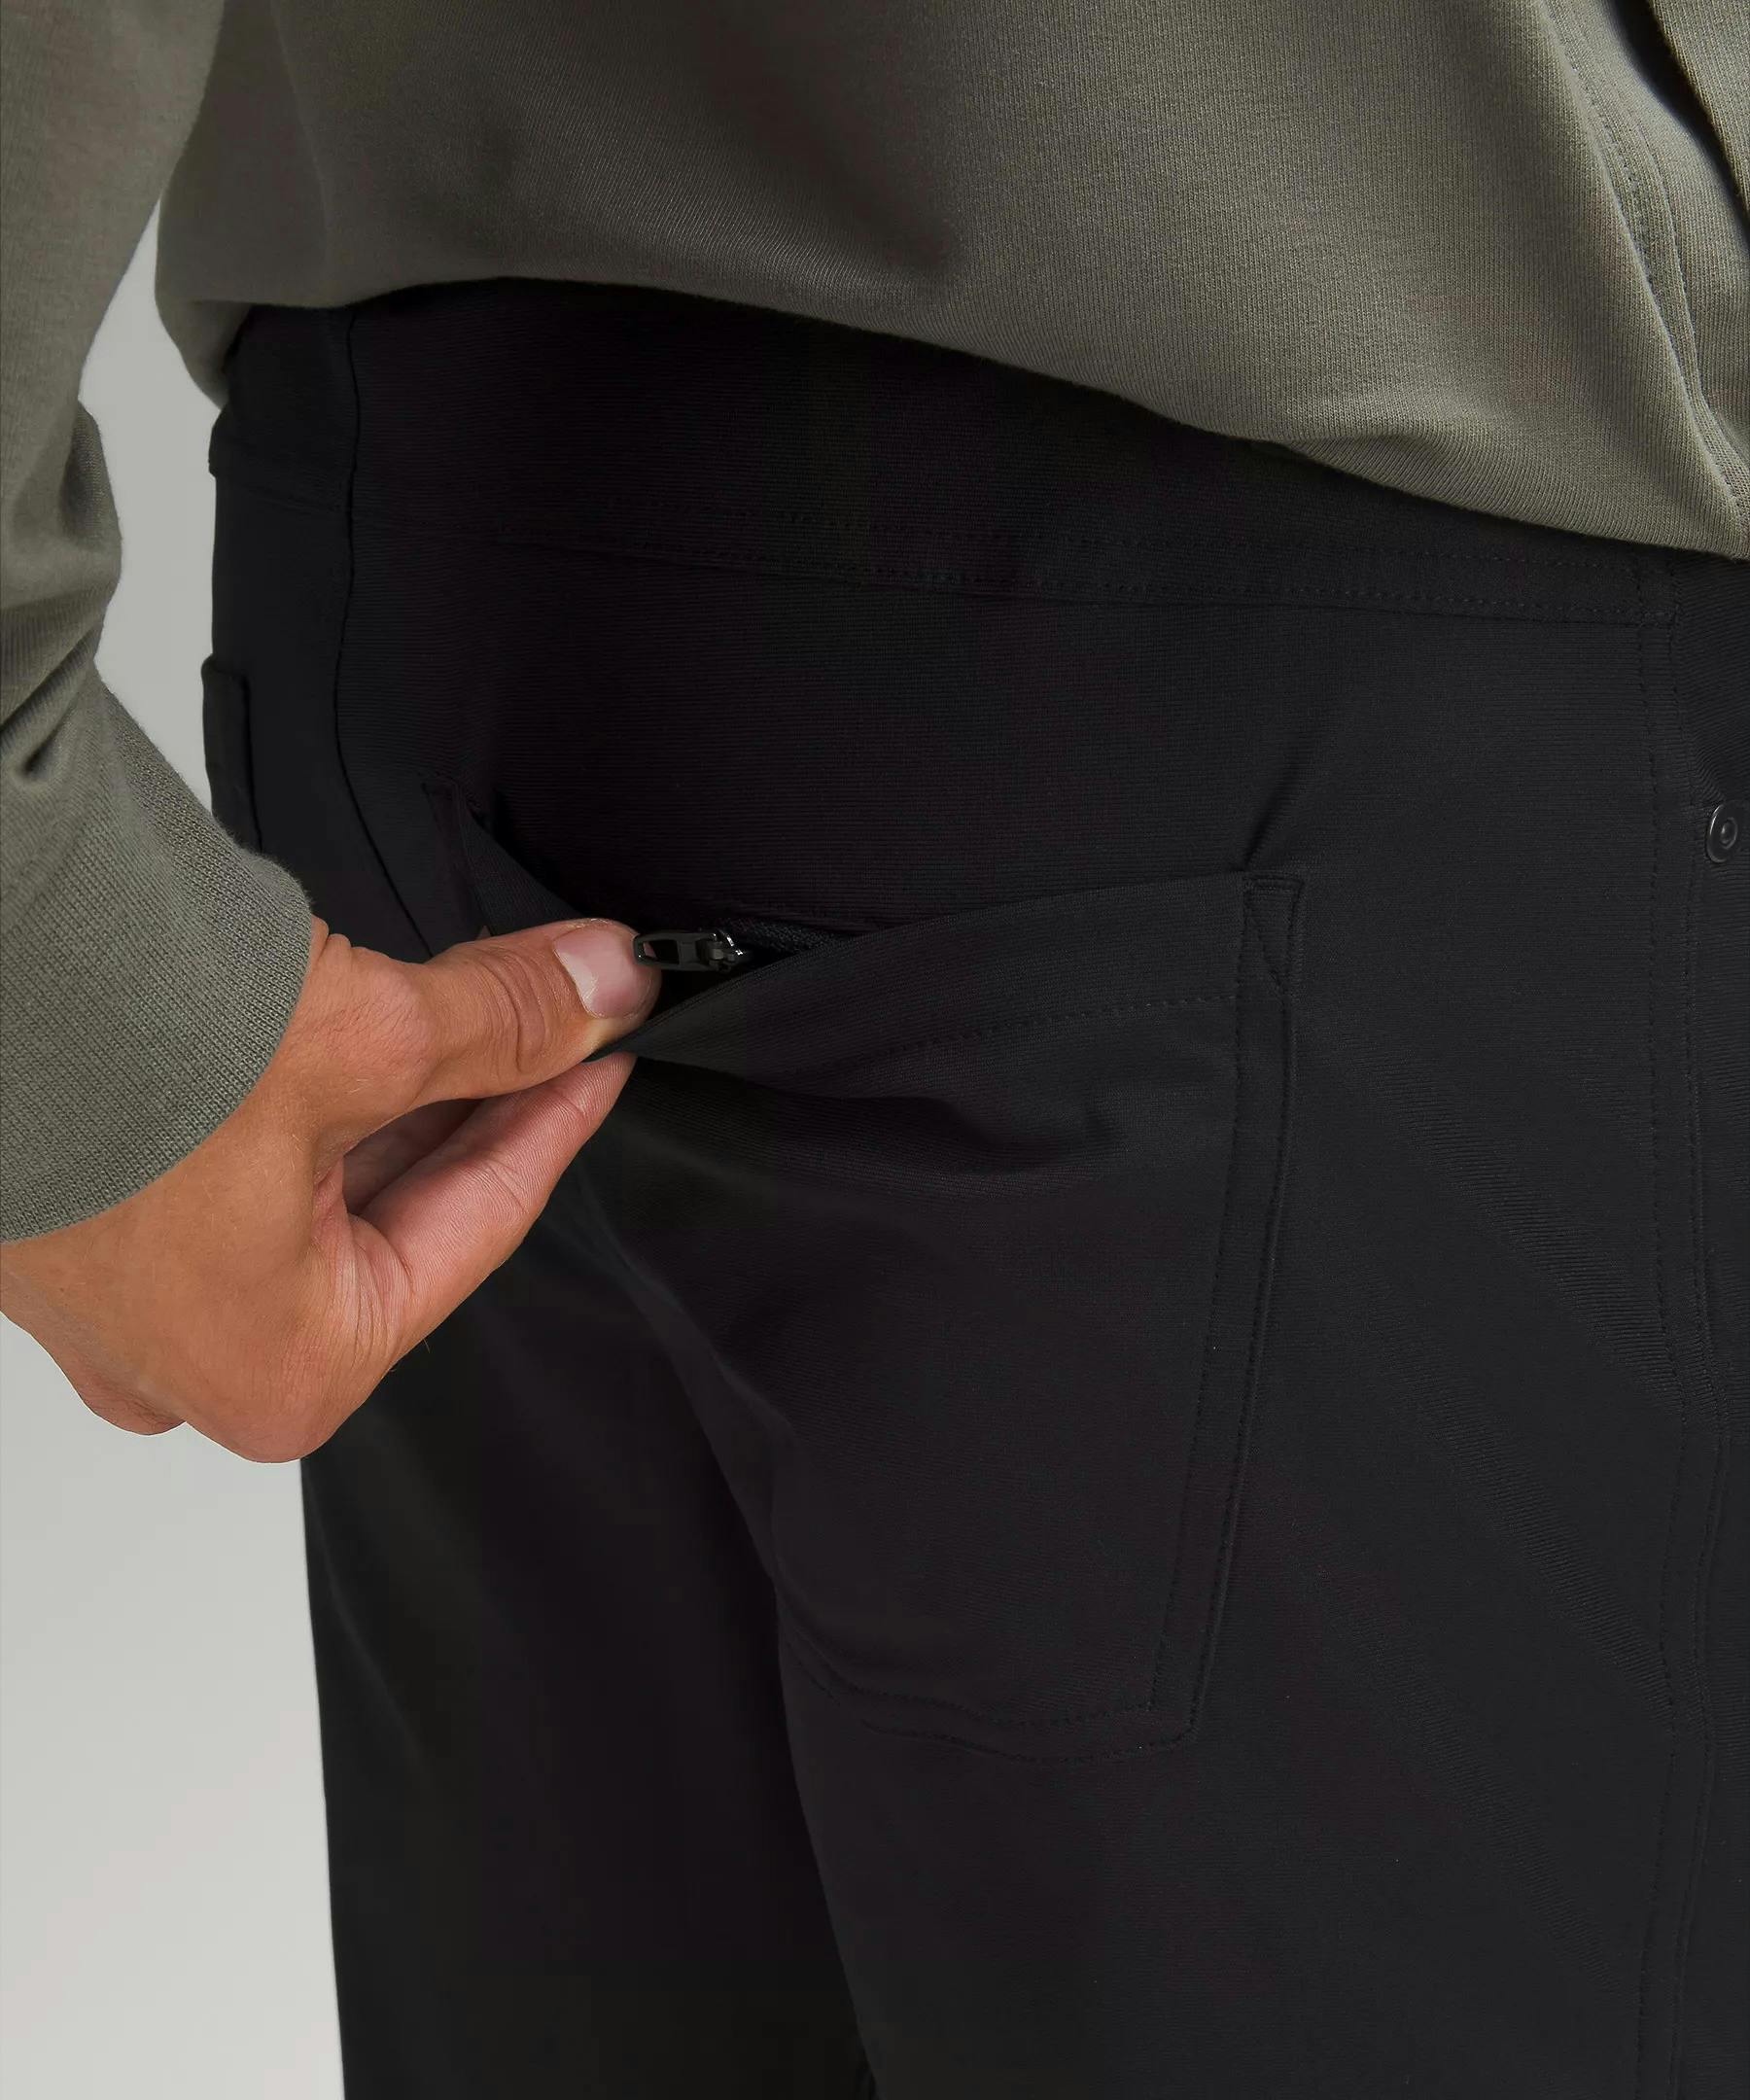 lululemon ABC Slim Fit Pant - Black, Active Pants & Joggers